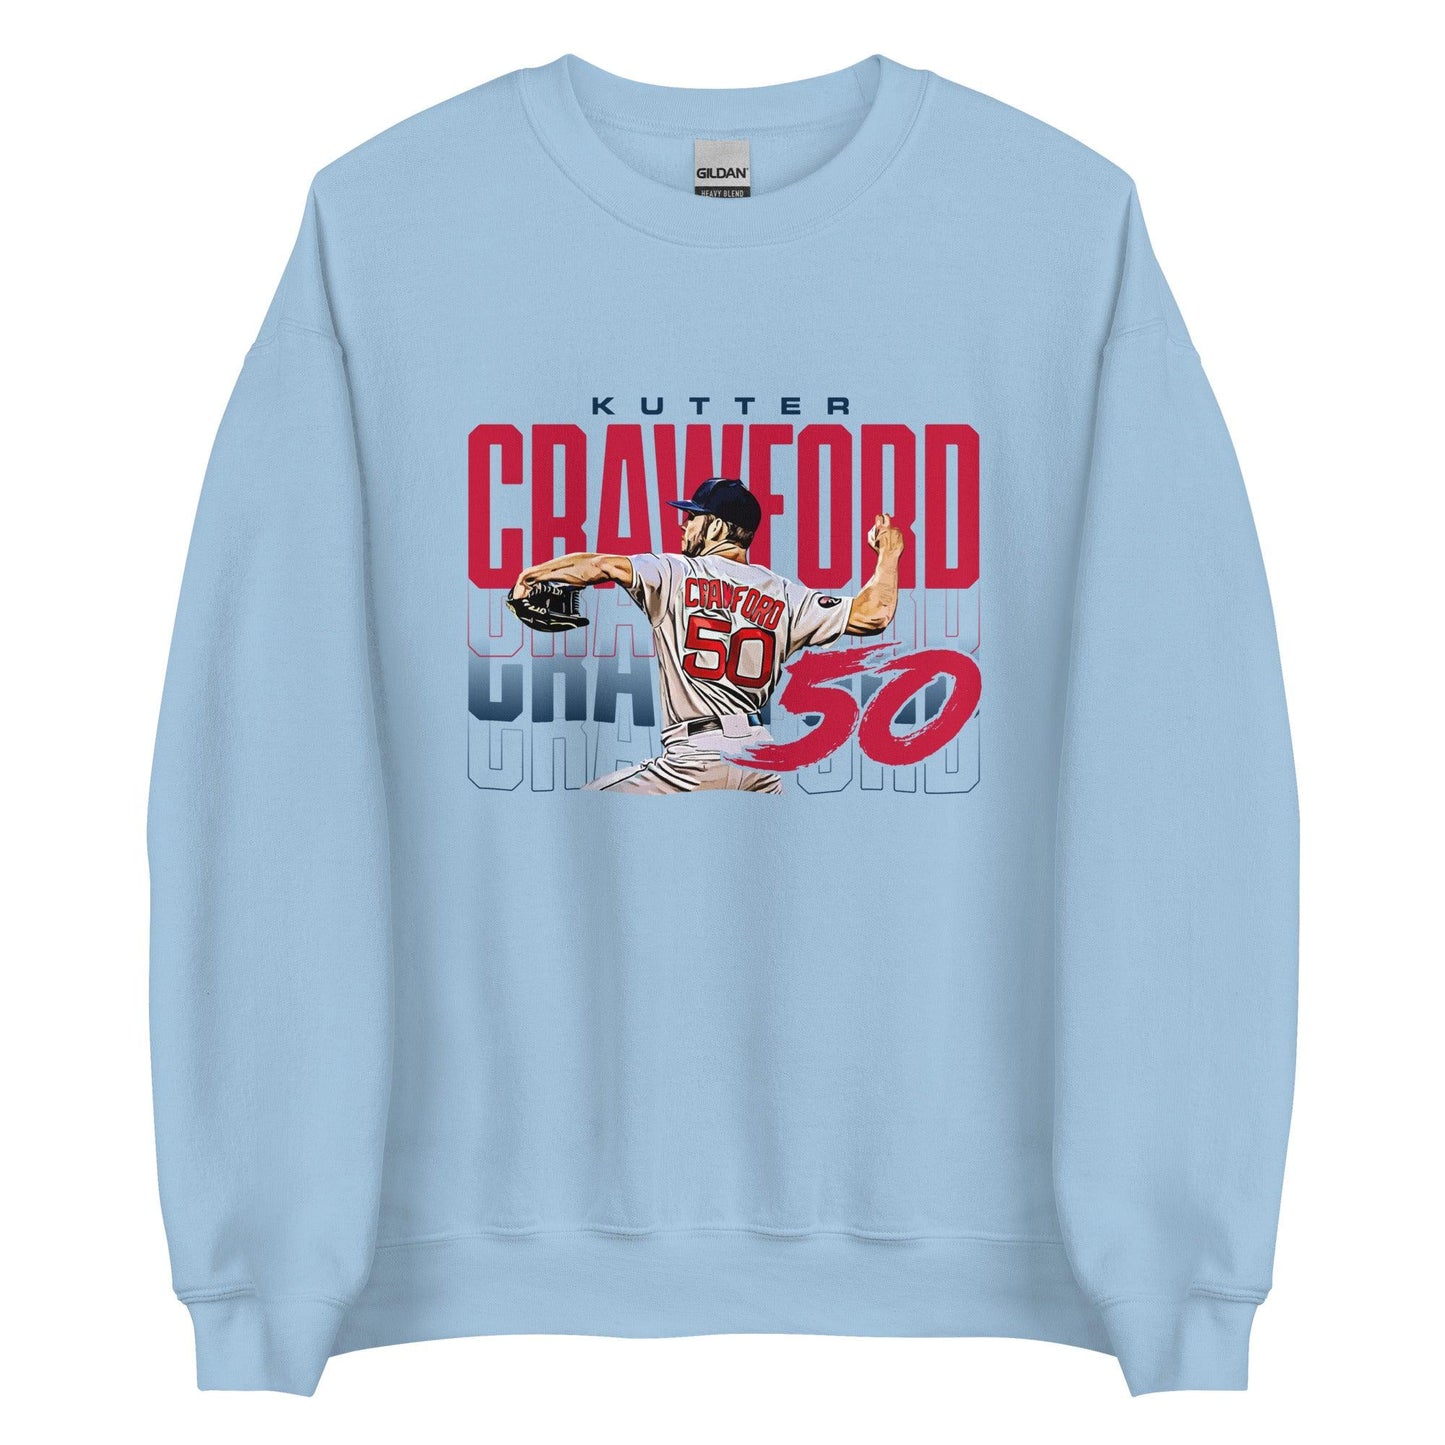 Kutter Crawford "Repeat" Sweatshirt - Fan Arch